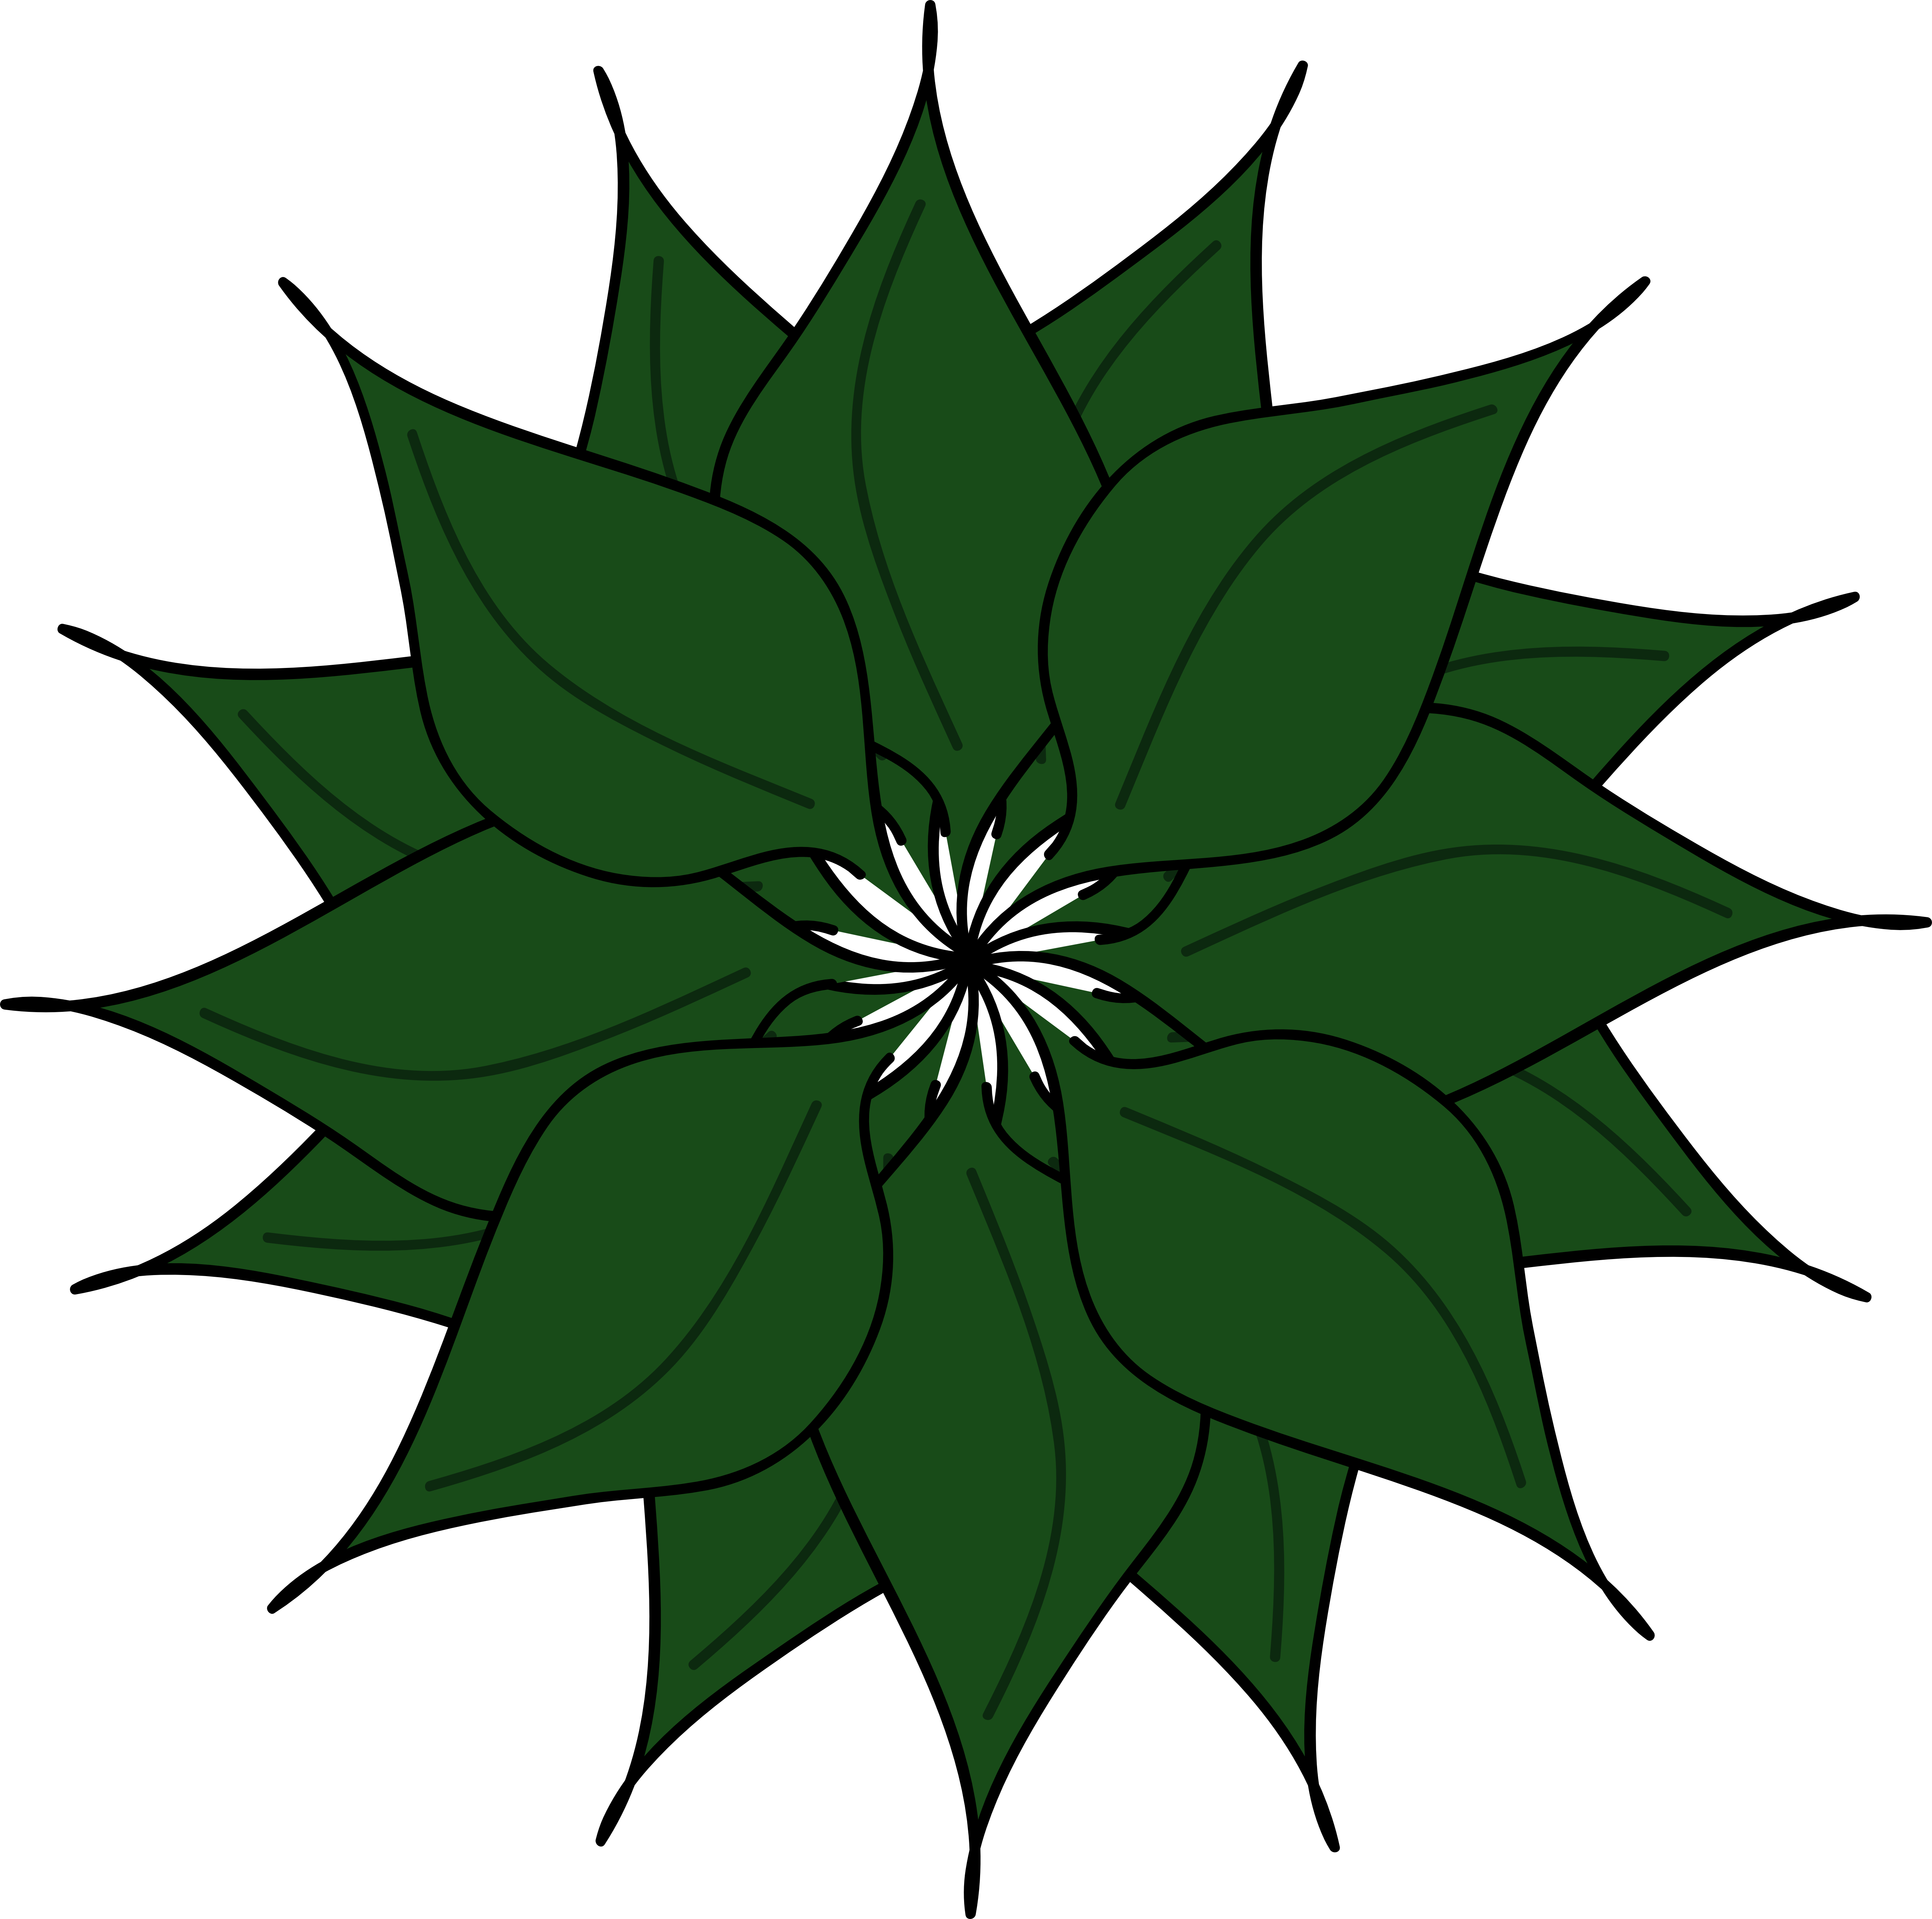 Green flower clipart